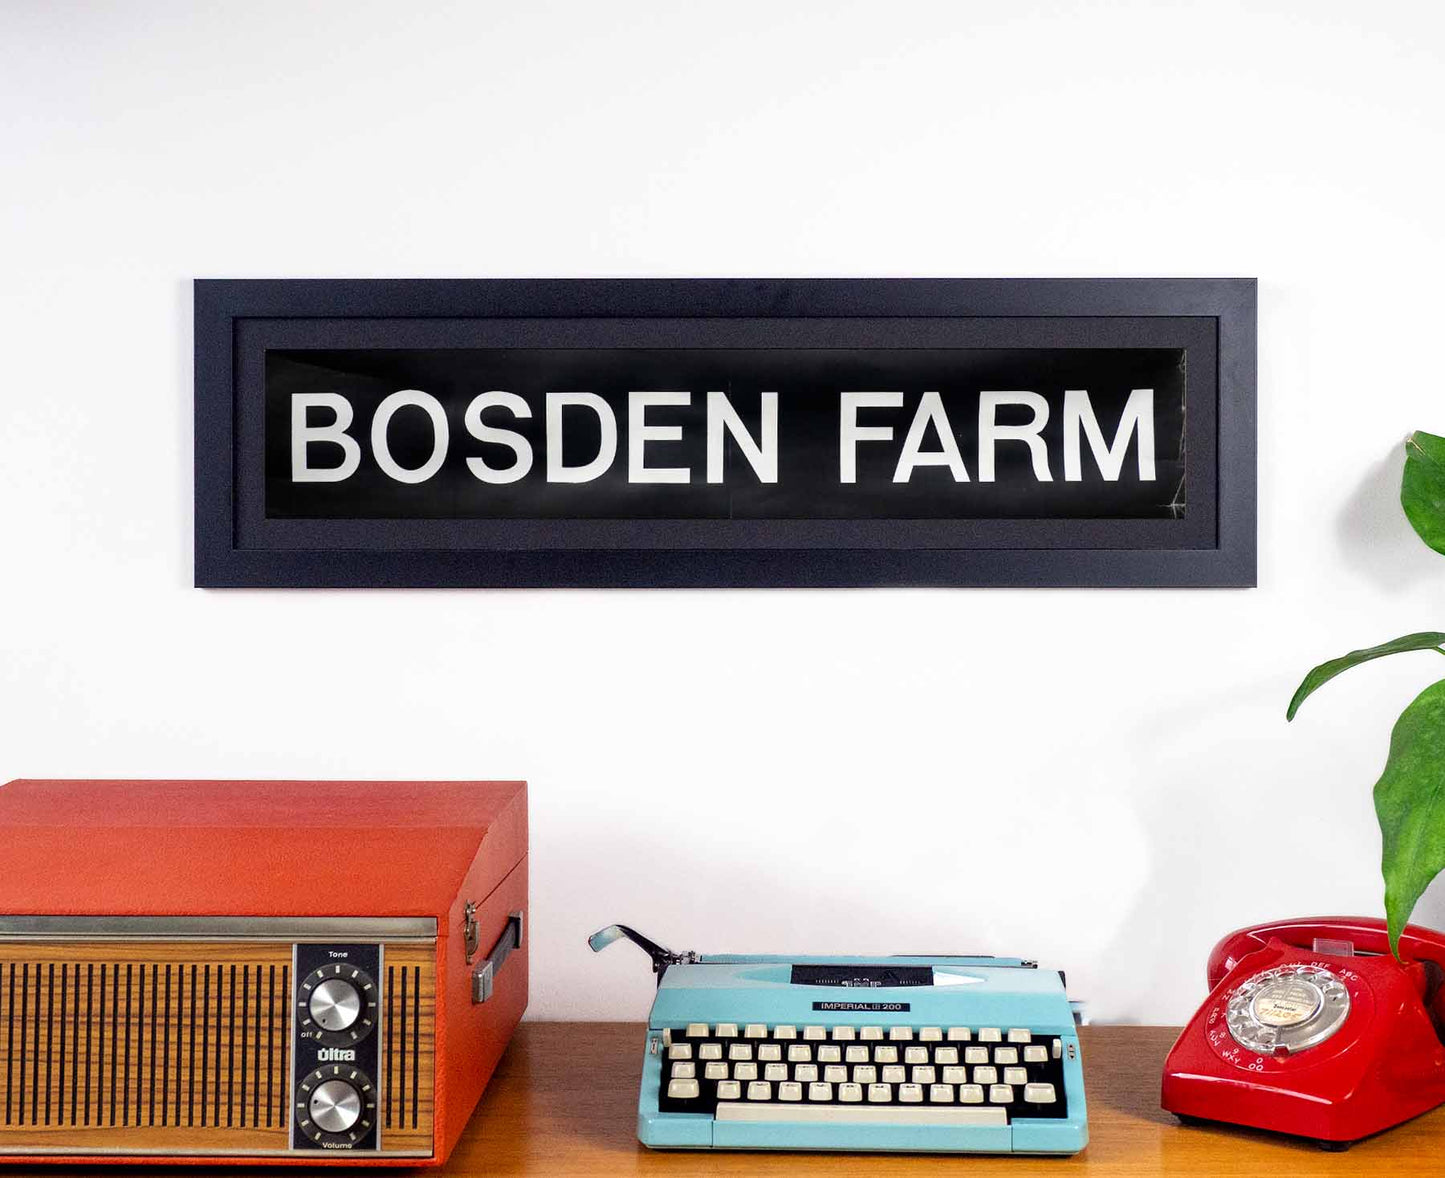 Bosden Farm 1970s Framed Bus Blind